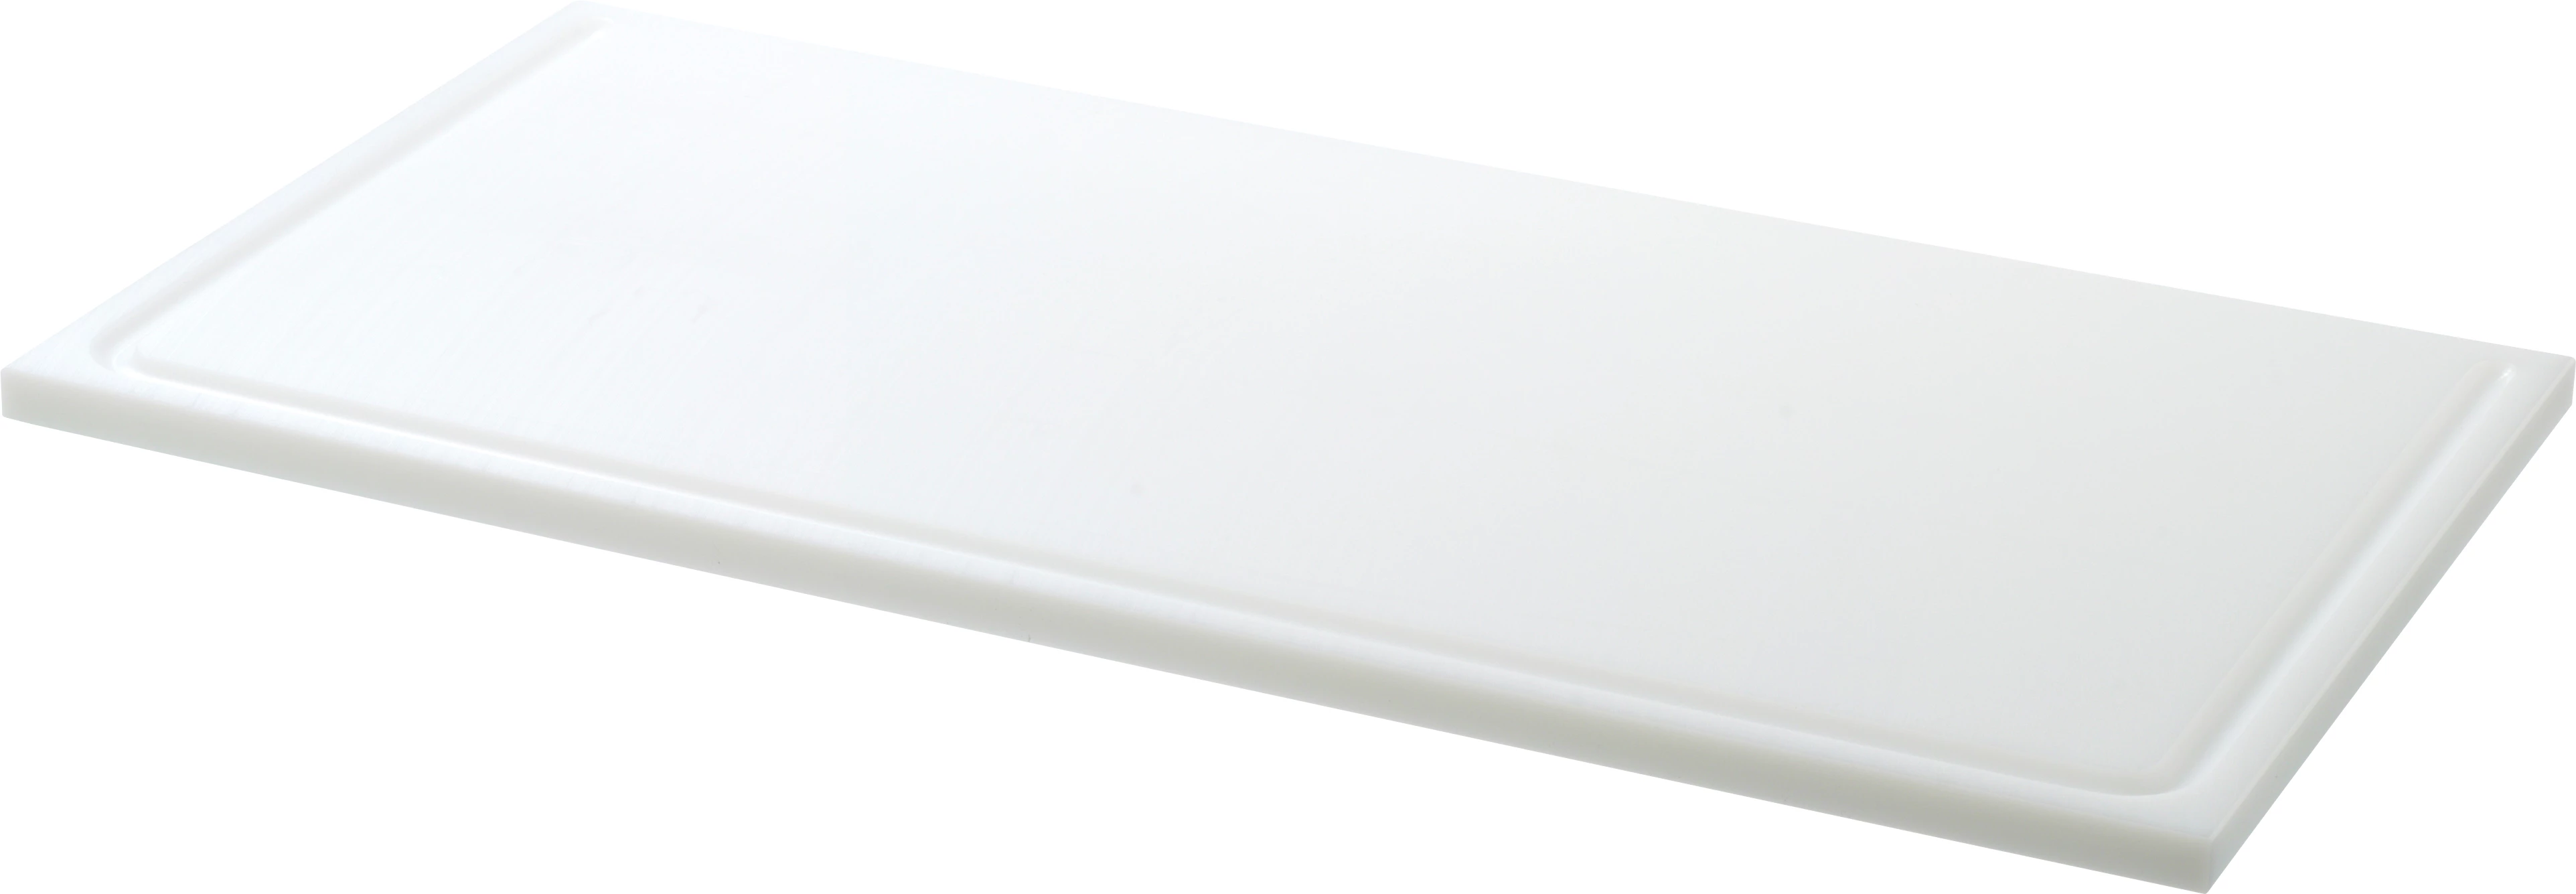 Euroboard skæreplanke, hvid, 60 x 30 x 1,5 cm